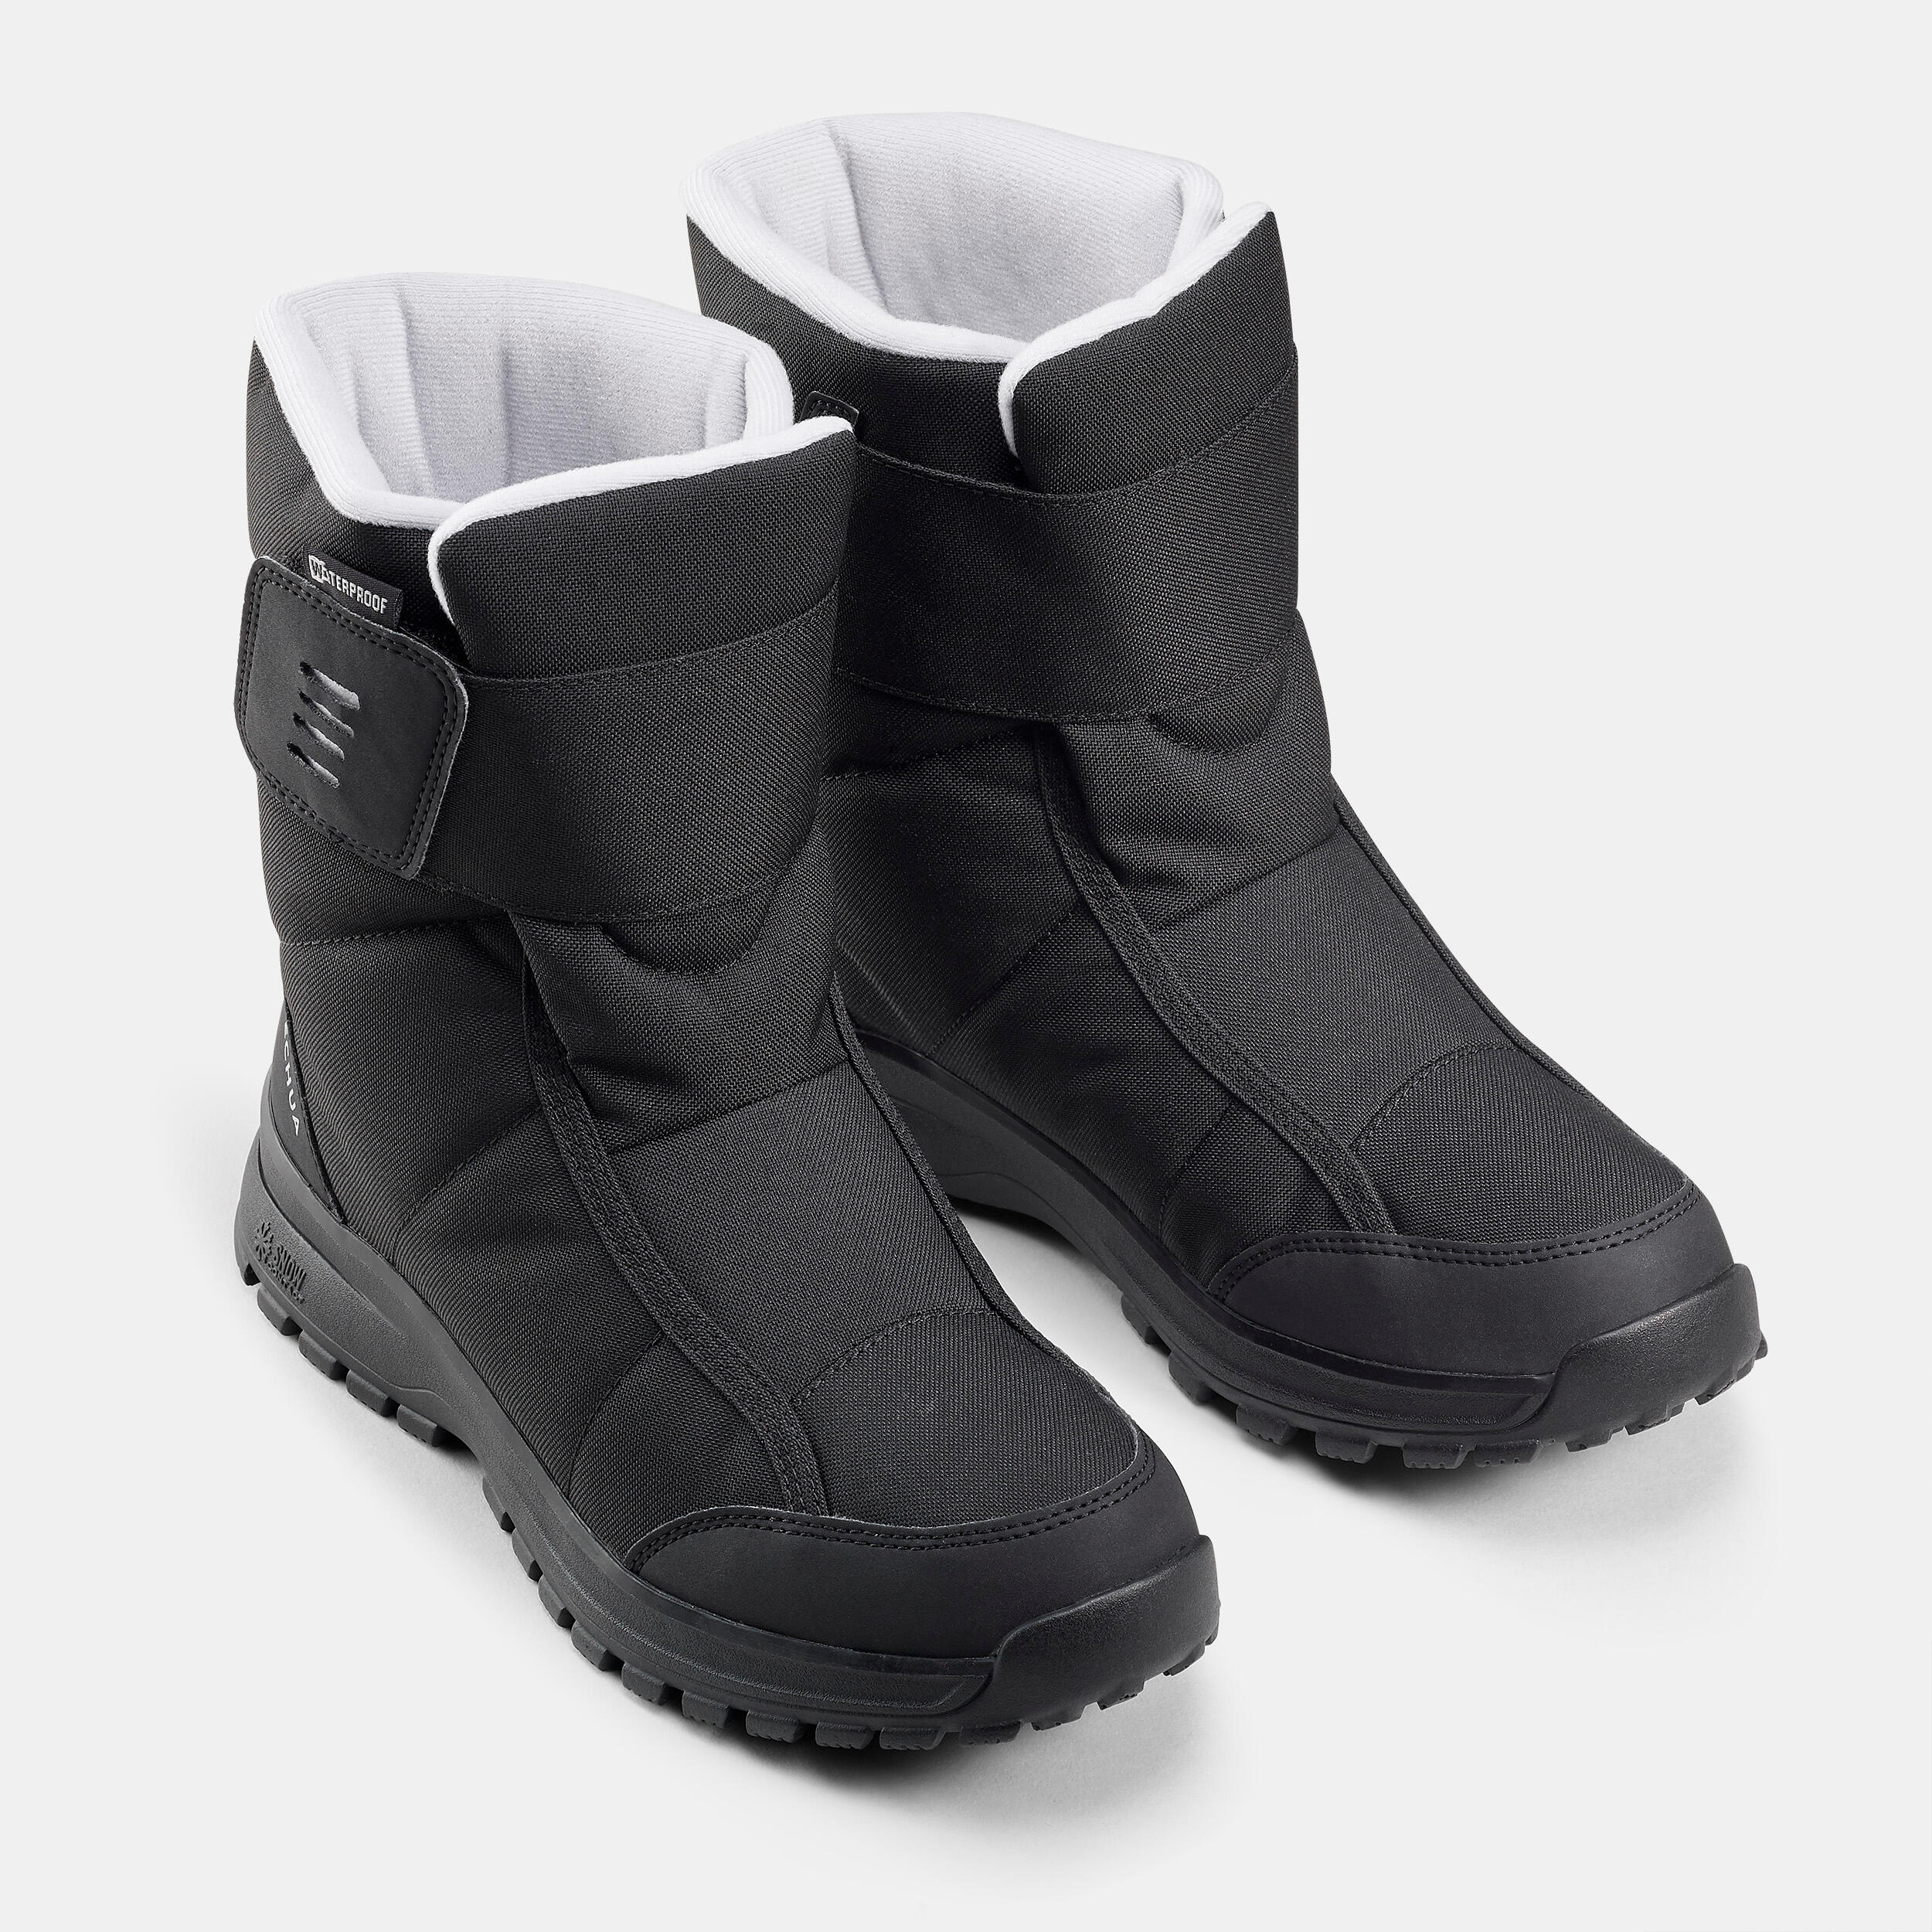 Women's warm waterproof snow hiking boots - SH100 Velcro  2/5